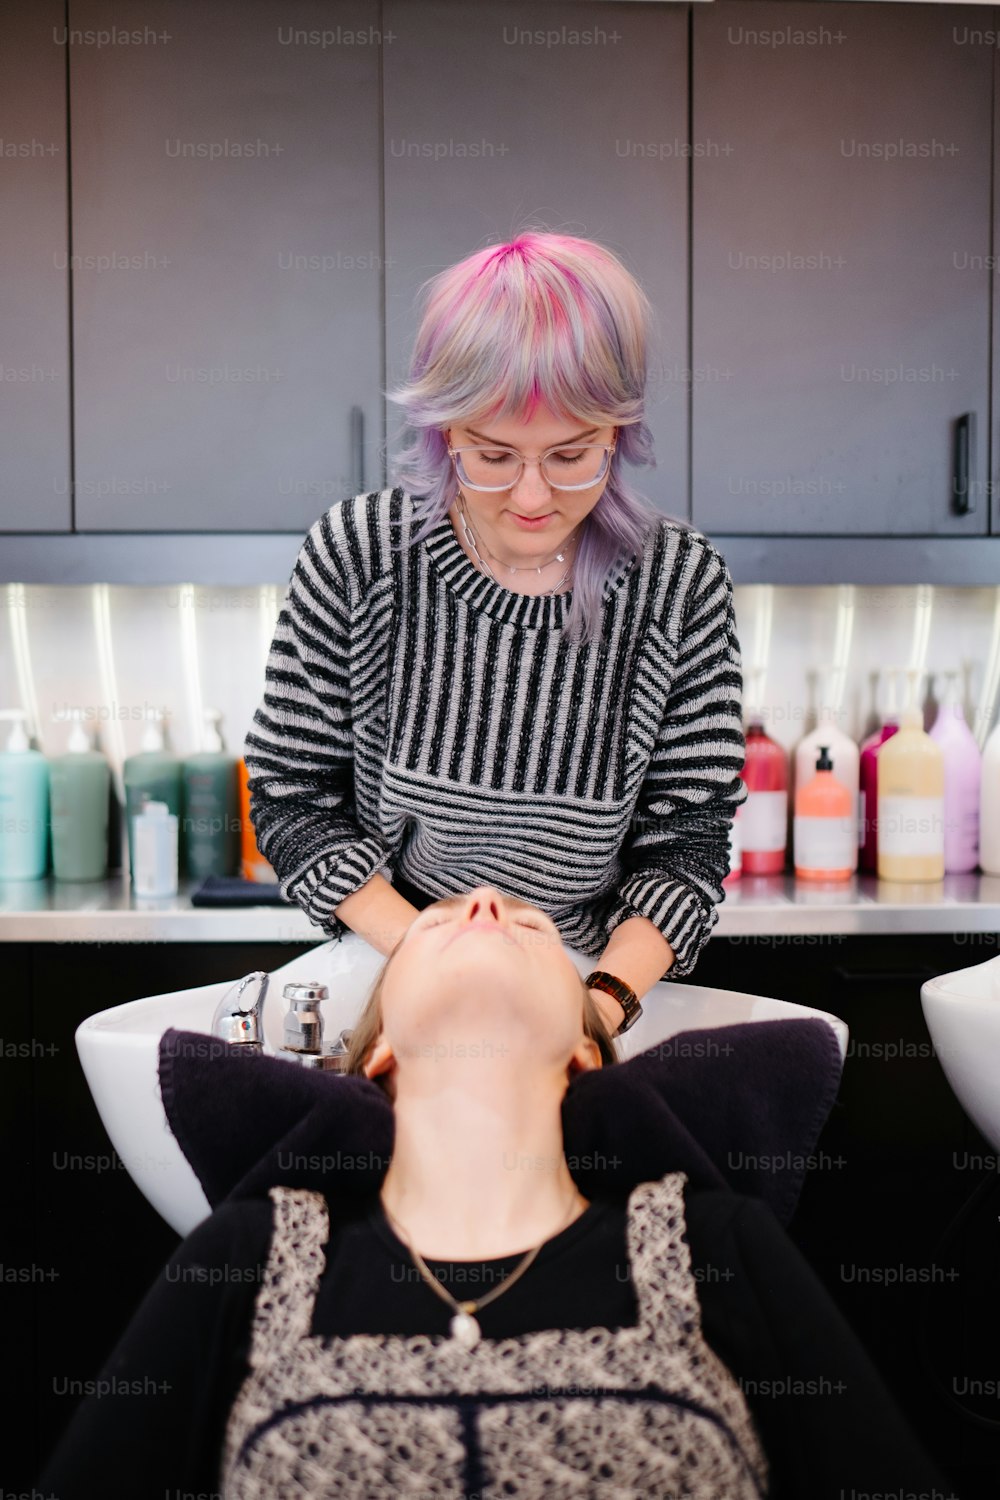 a woman getting a haircut at a salon